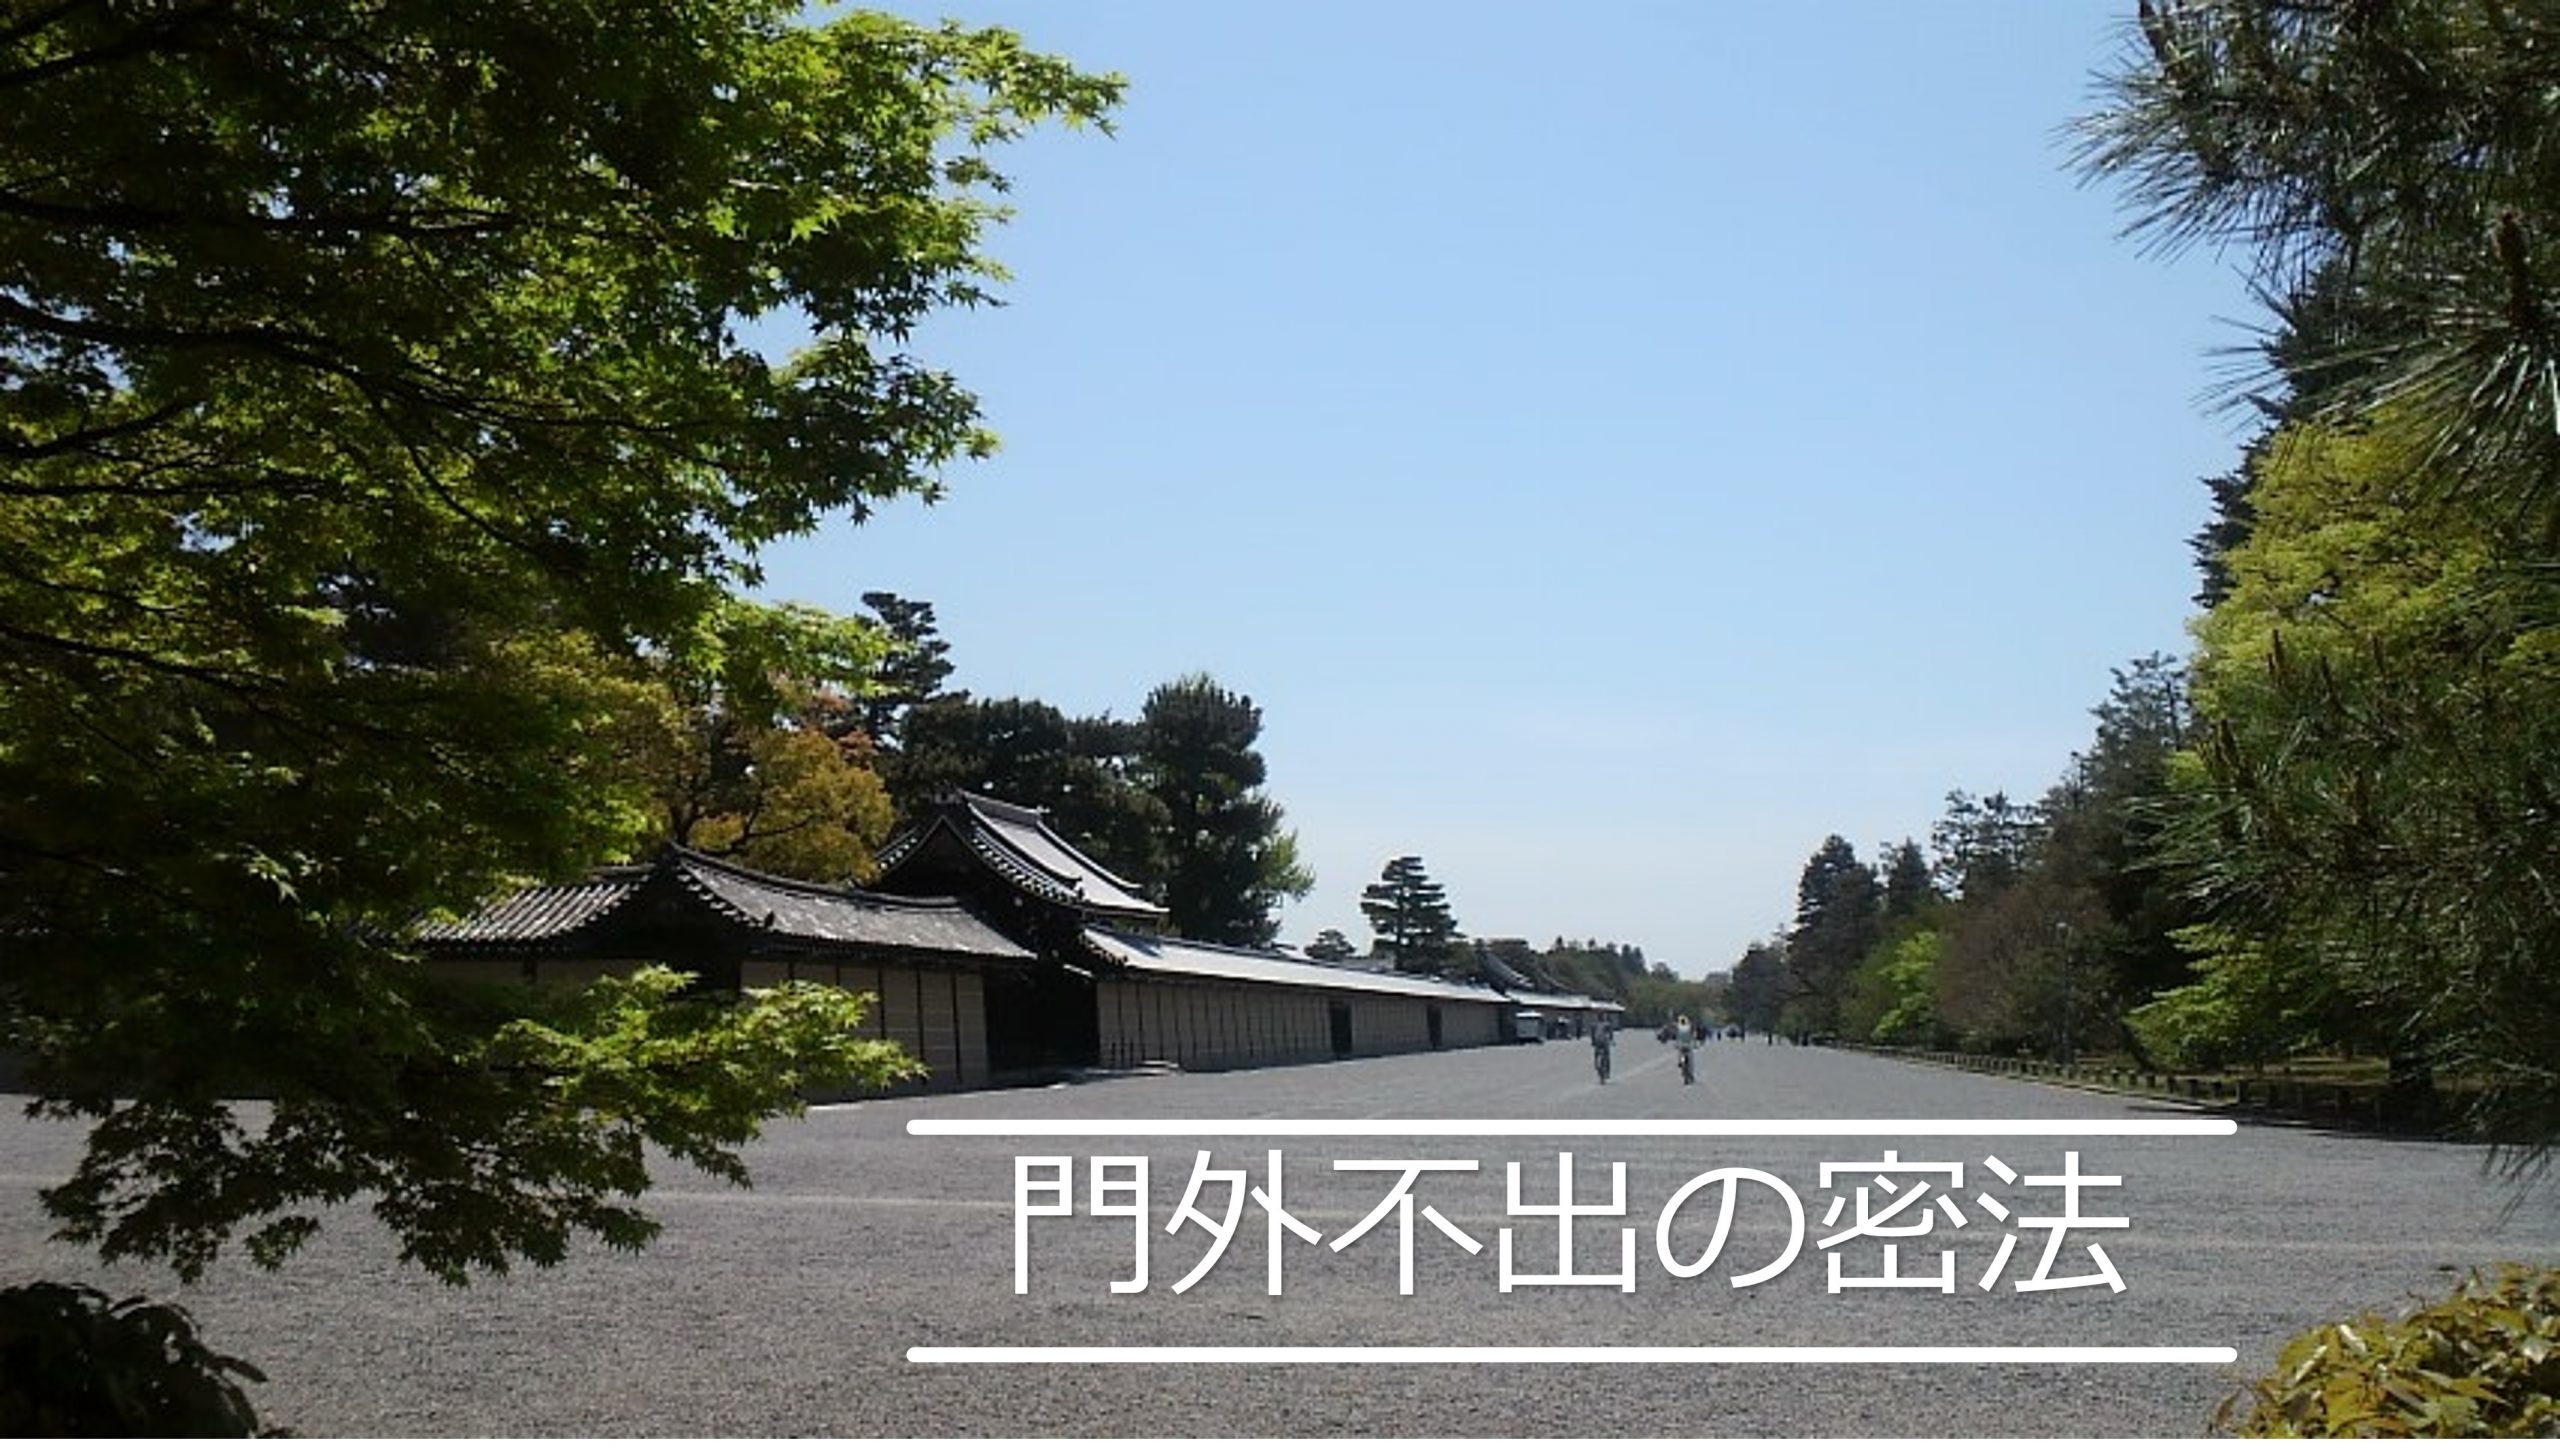 門外不出の密法は京都御所と江戸城に施されていました | かごめchannel